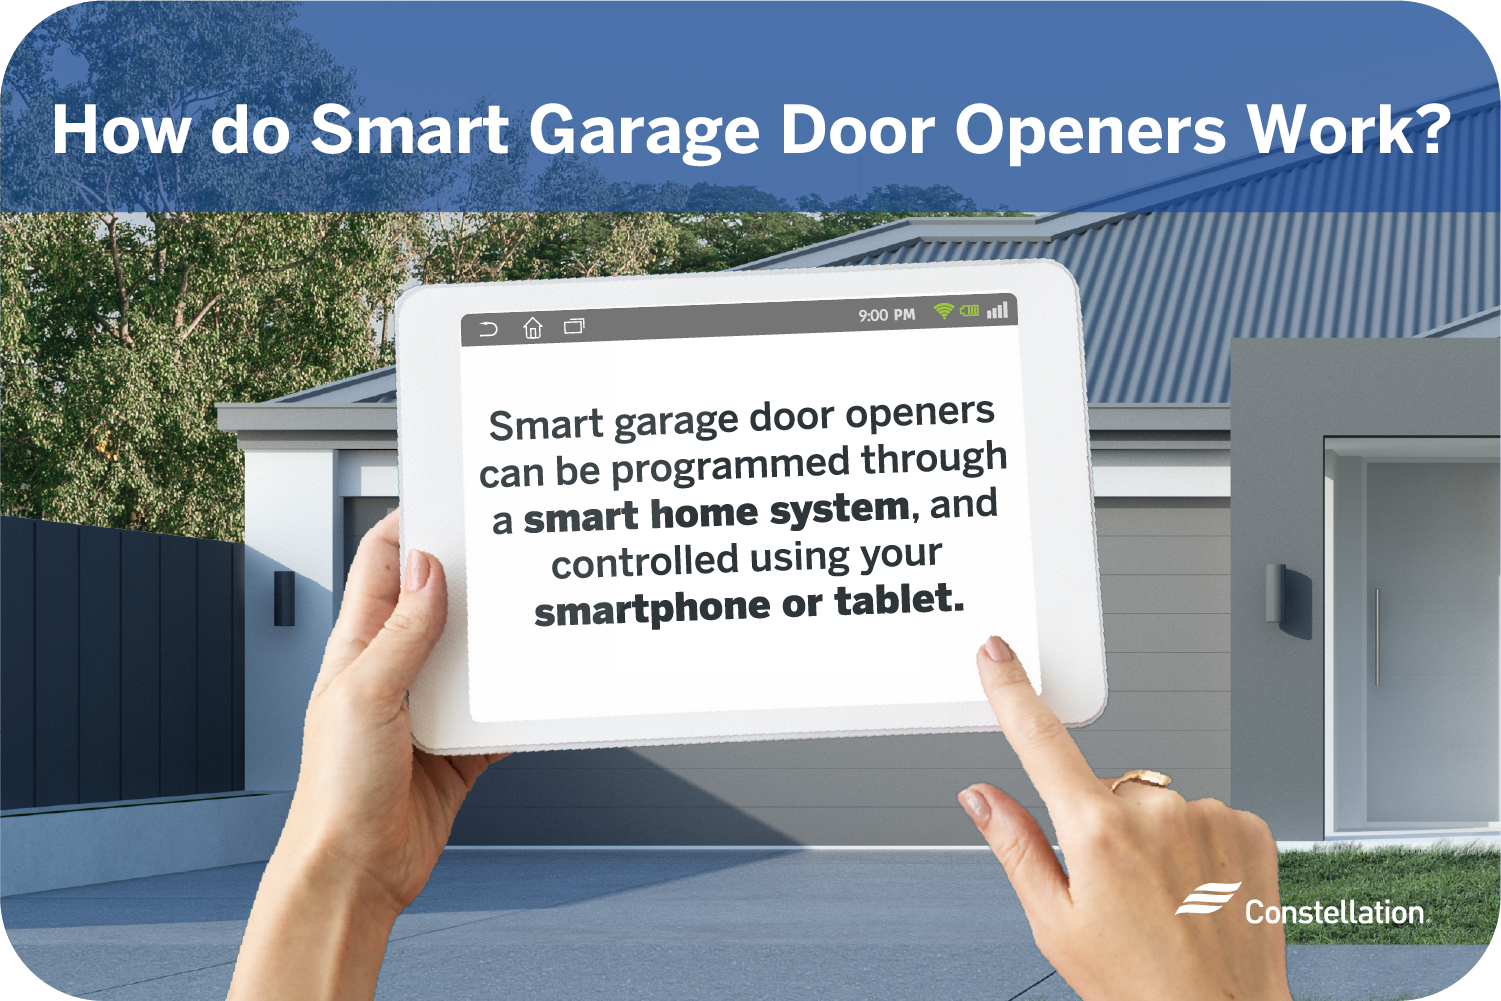 How do smart garage door openers work?